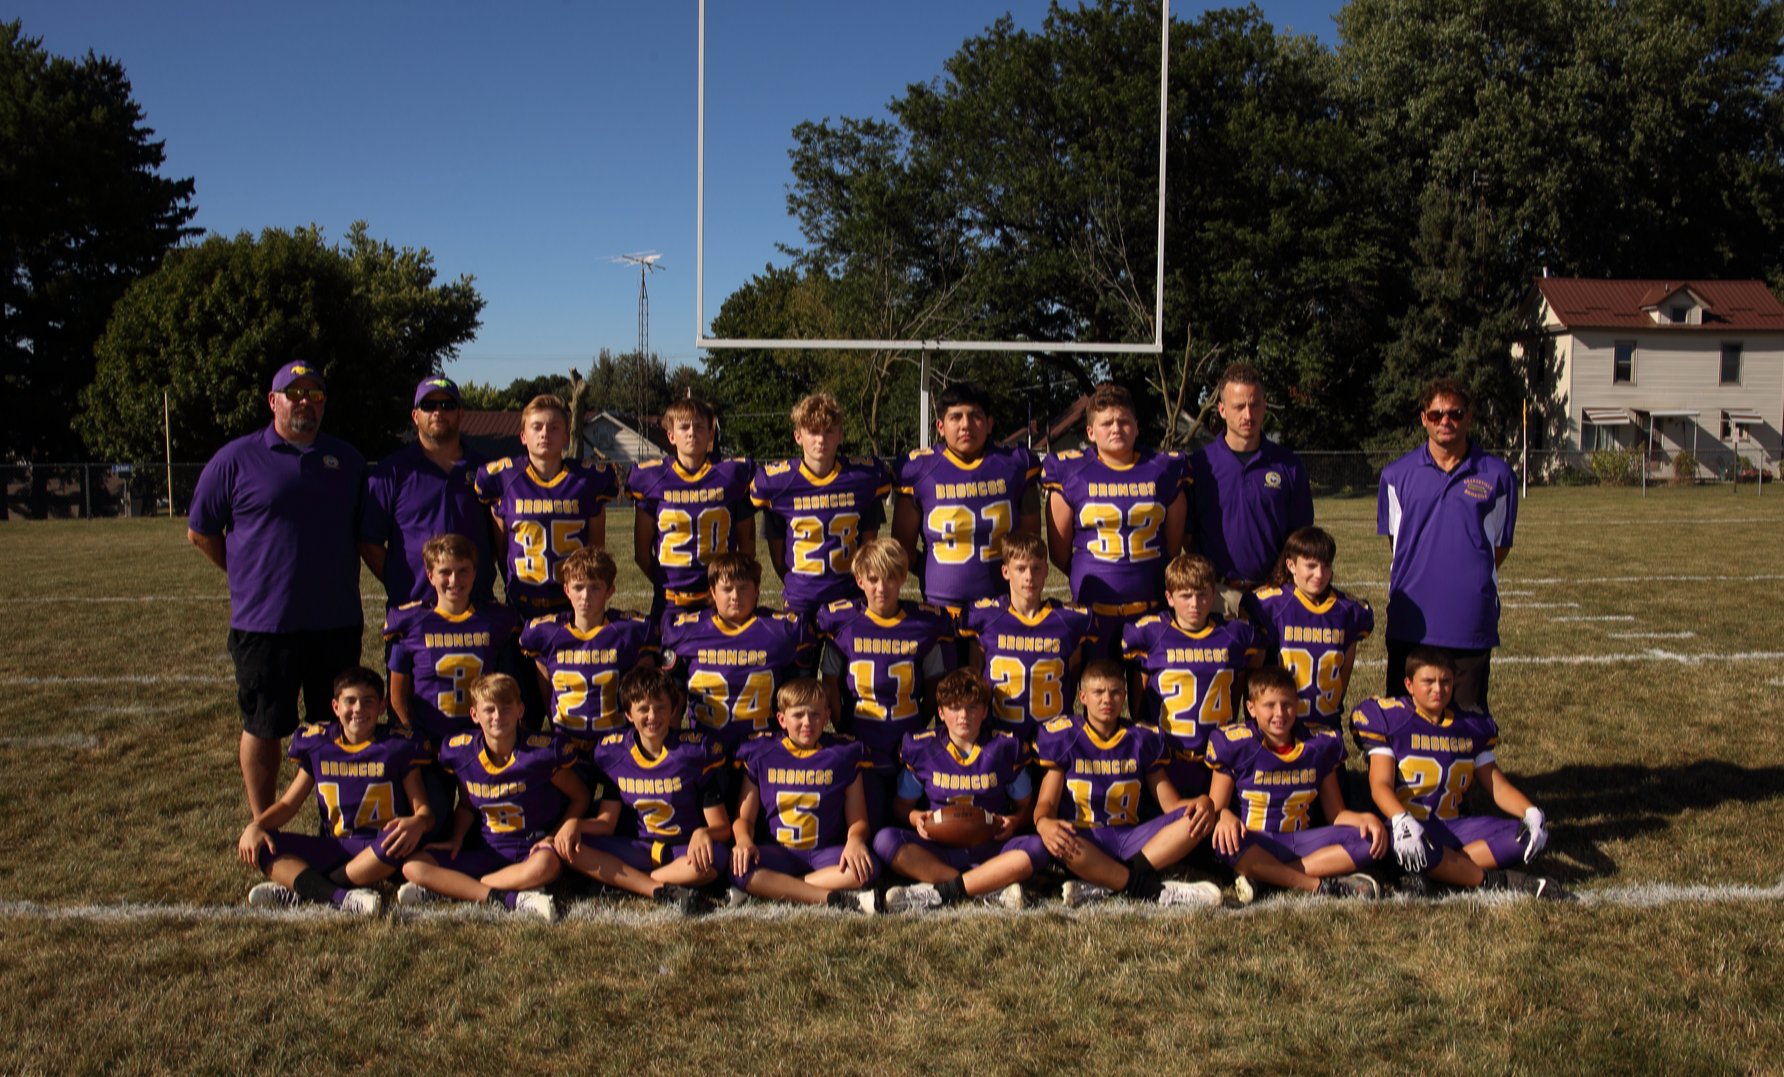 Orangeville 8th Grade Football team